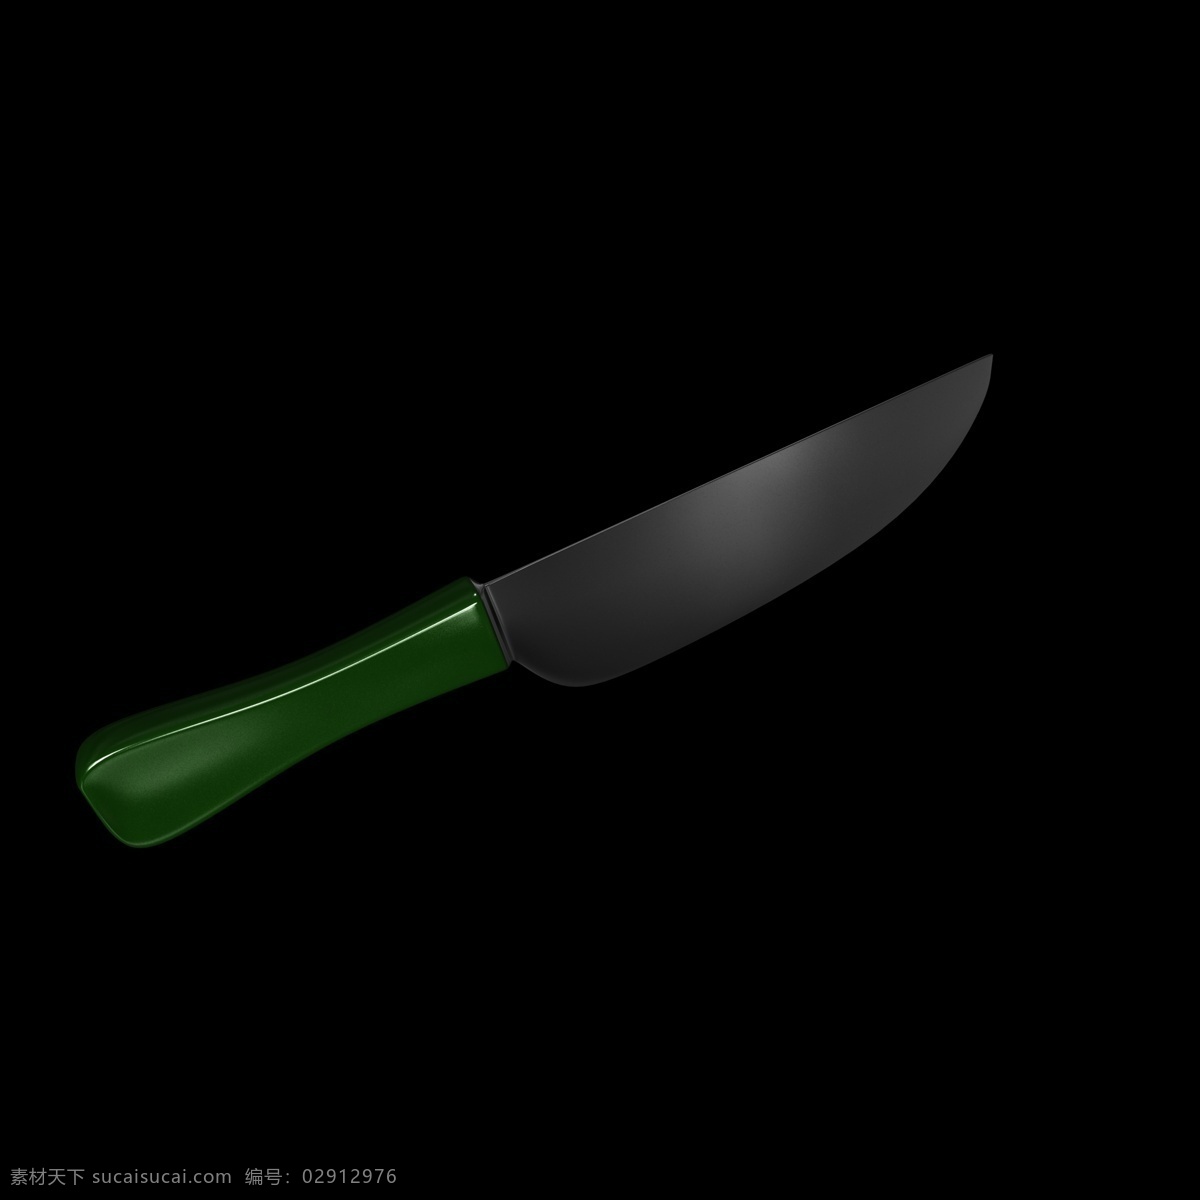 绿色 插图 刀具 用品 刀子 器具 刀子插图用具 海报插图 立体造型刀具 创意刀型插图 小刀 匕首